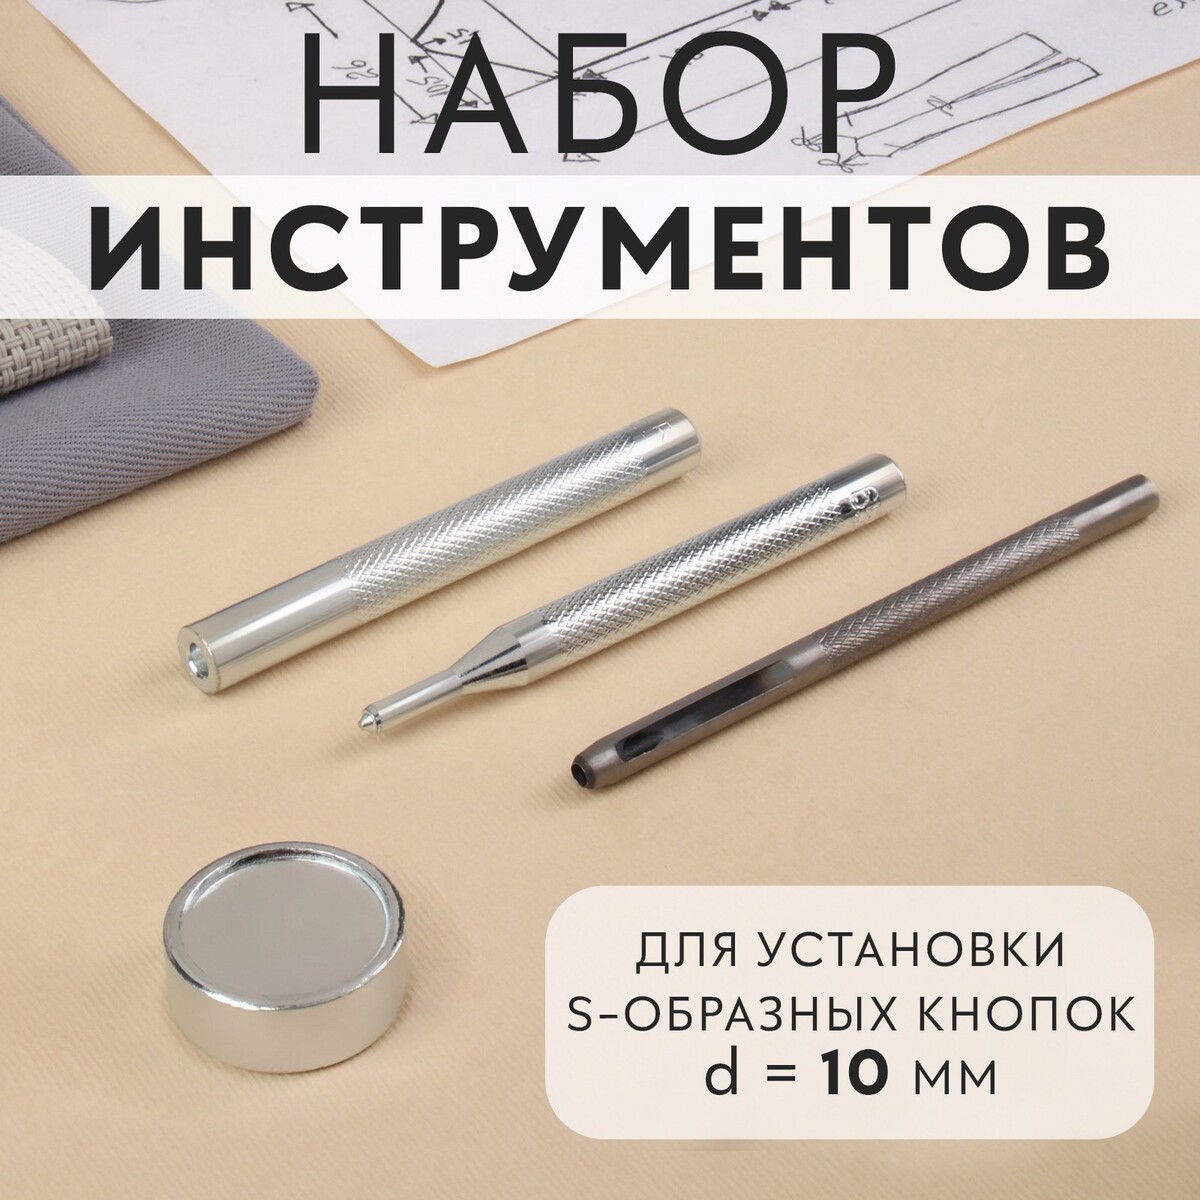 Набор инструментов для ручной установки s-образных кнопок, с колодцем, №655, d = 10 мм